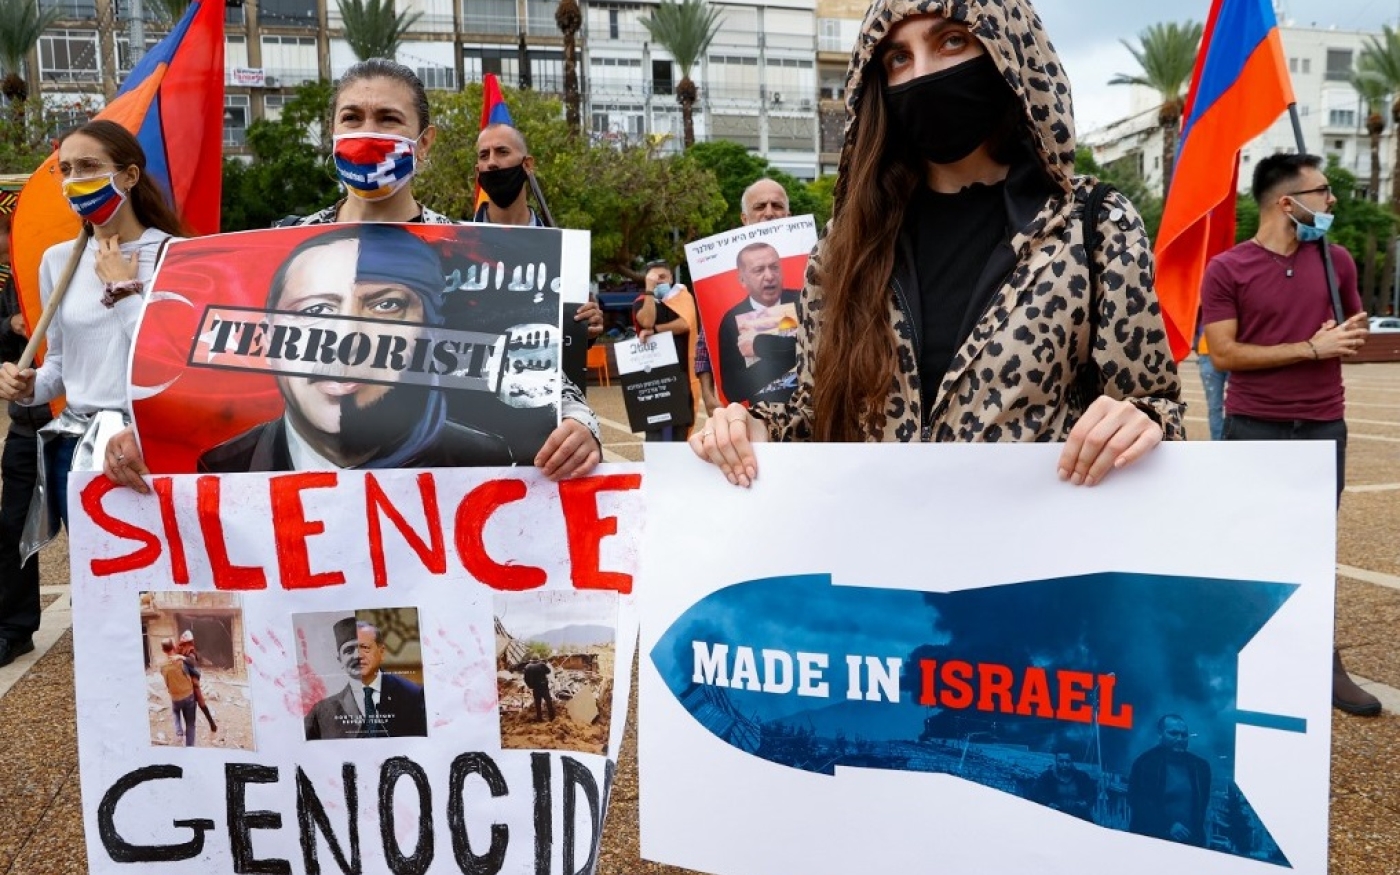 Des membres de la communauté arménienne manifestent à Tel Aviv le 6 novembre 2020 contre les ventes d’armes israéliennes à l’Azerbaïdjan durant le confit dans le Haut-Karabakh (AFP)